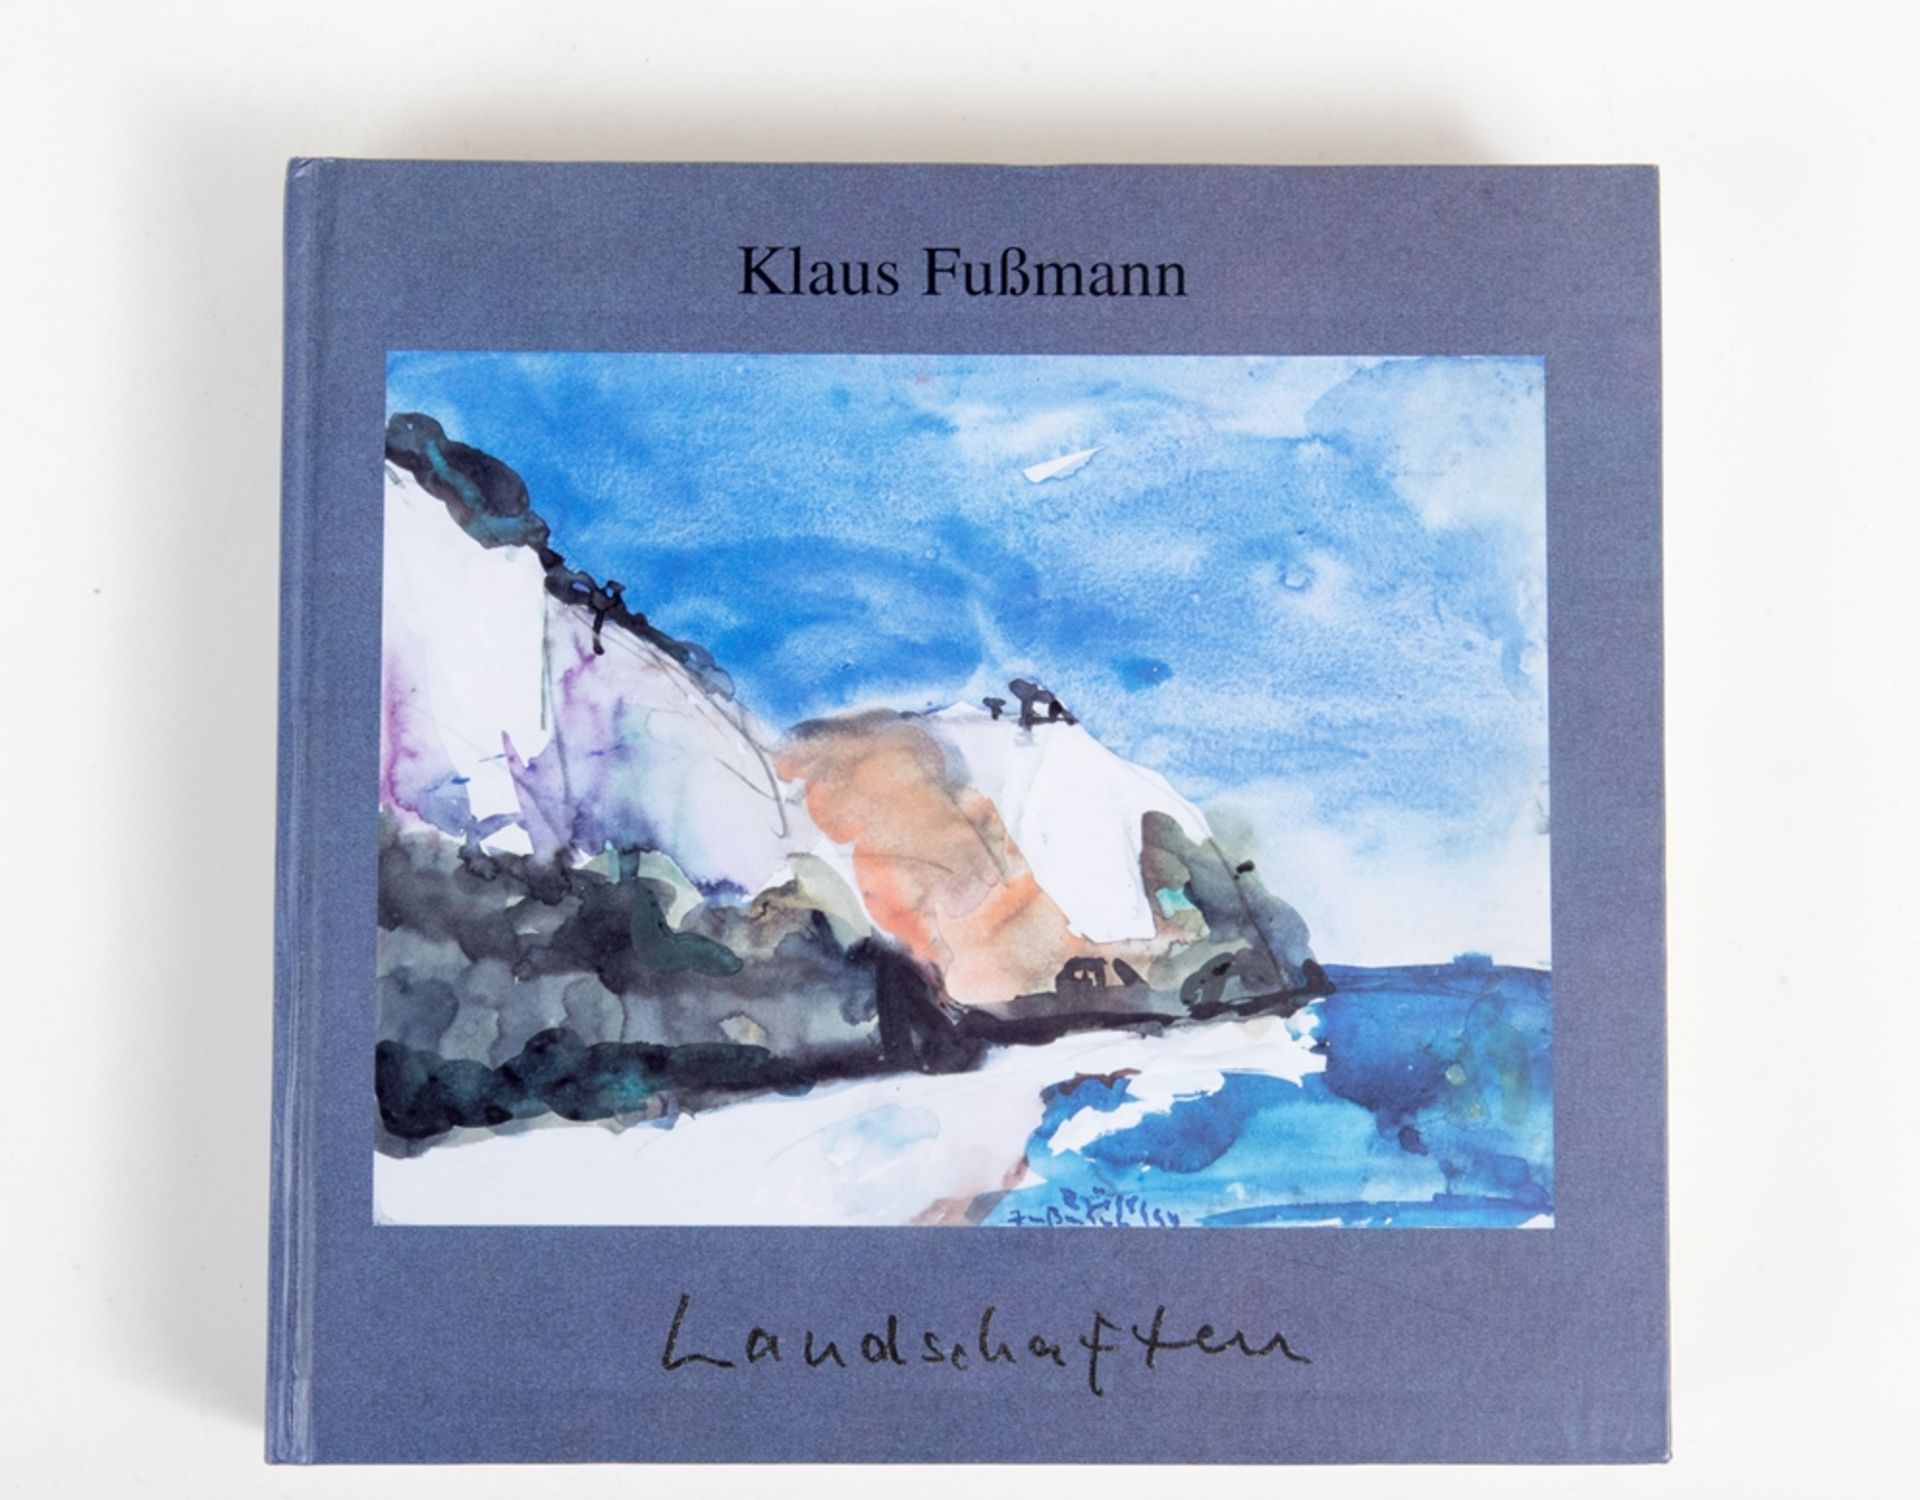 Fussmann, Klaus1938 Velbert - tätig ebenda. Landschaften - Sechs Jahre nach der Wiedervereinigung,